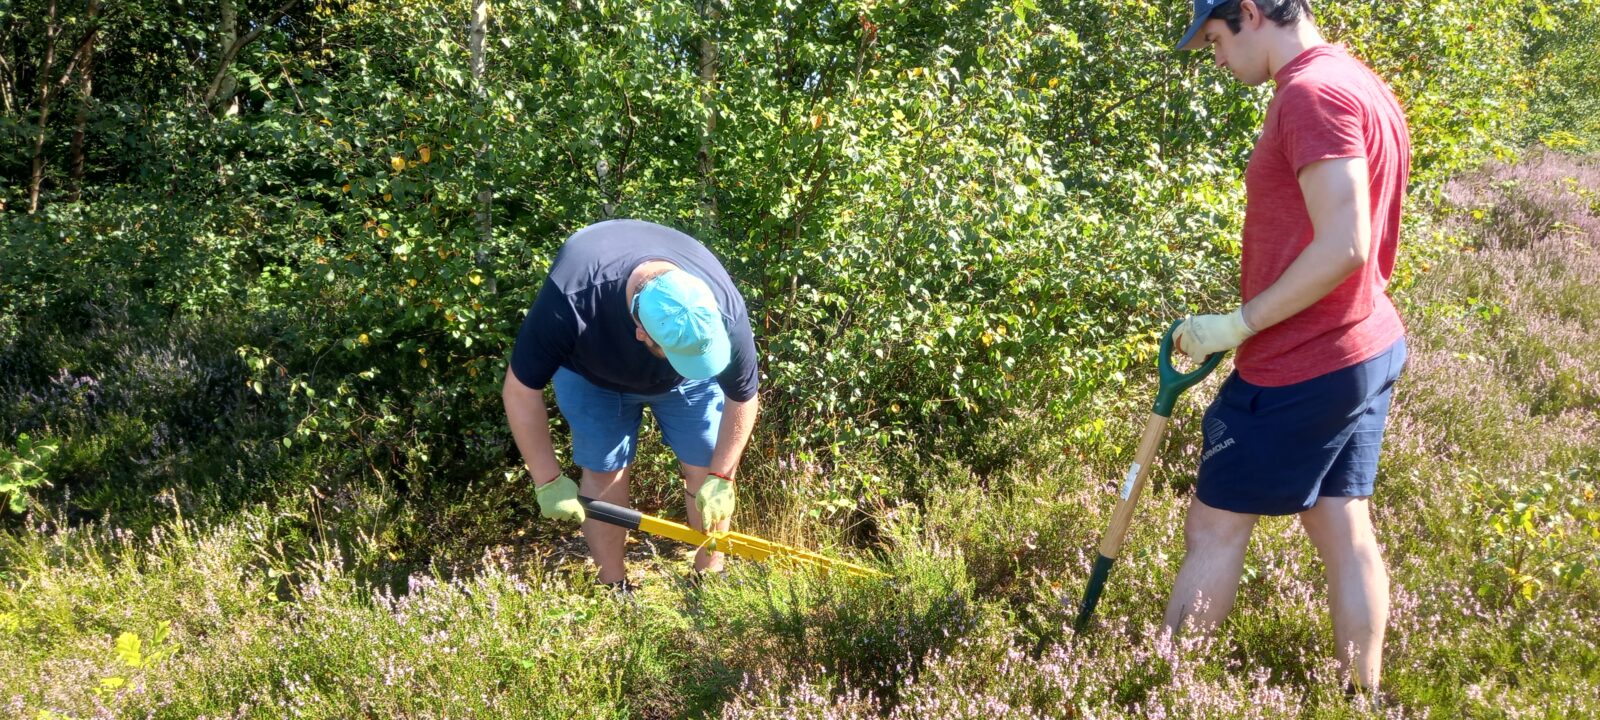 men taking part in heathland maintenance in woodland